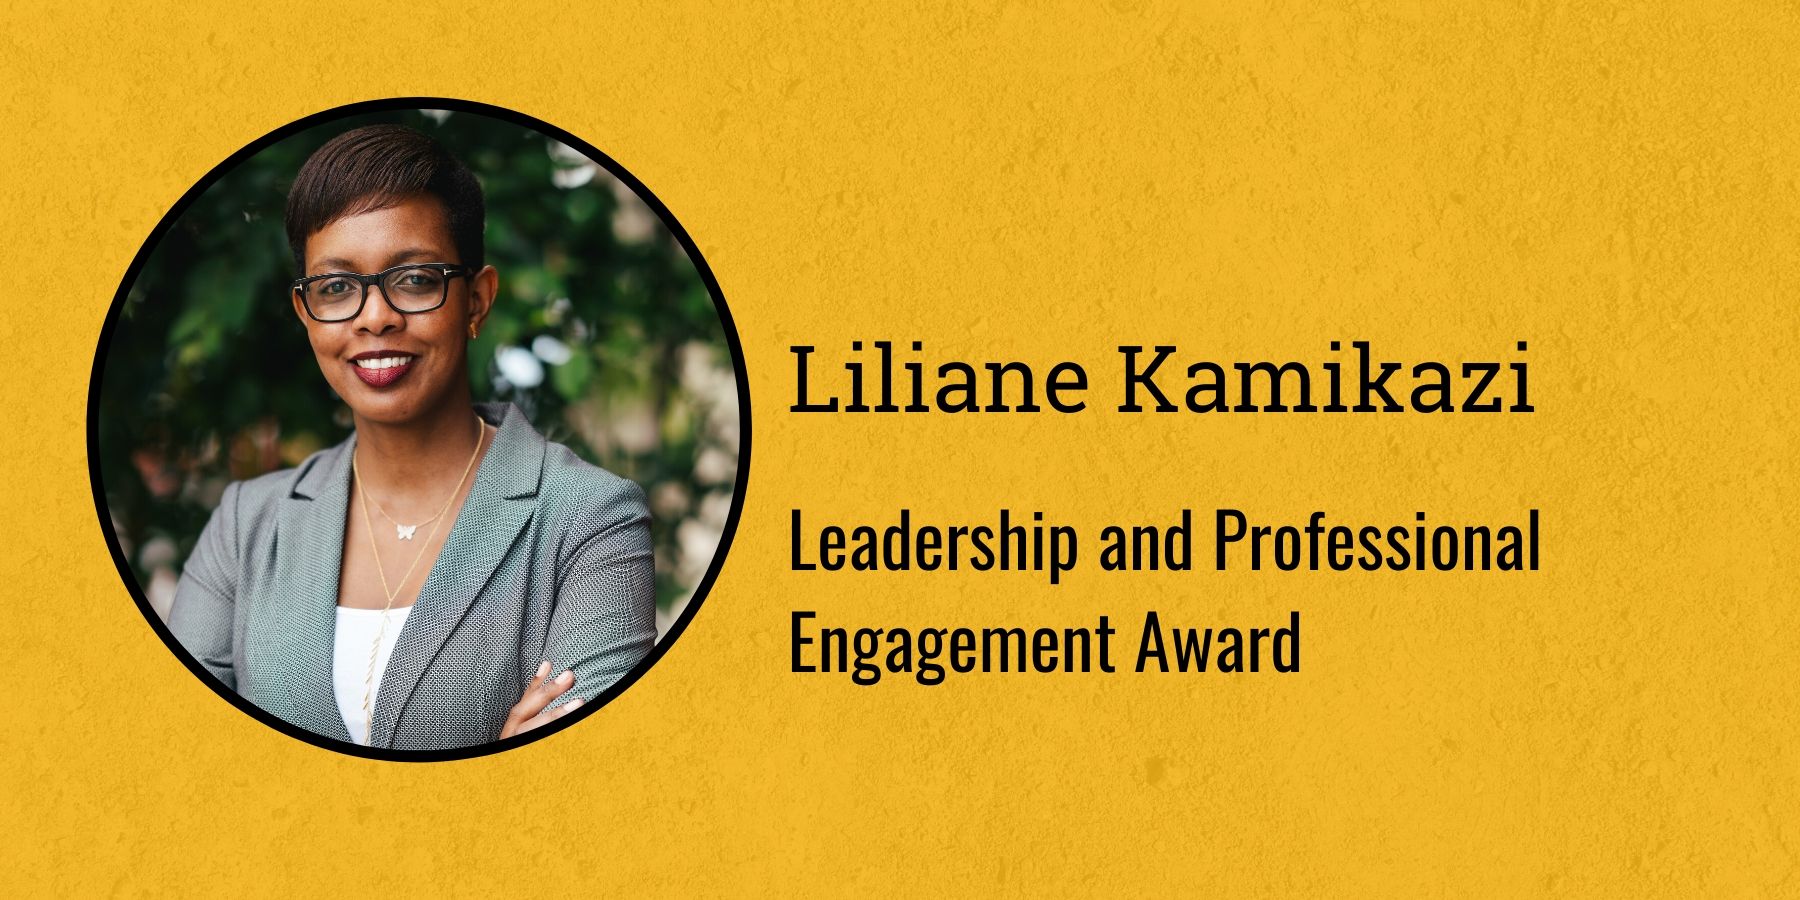 Photo of Liliane Kamikazi and text Leadership and Engagement Award